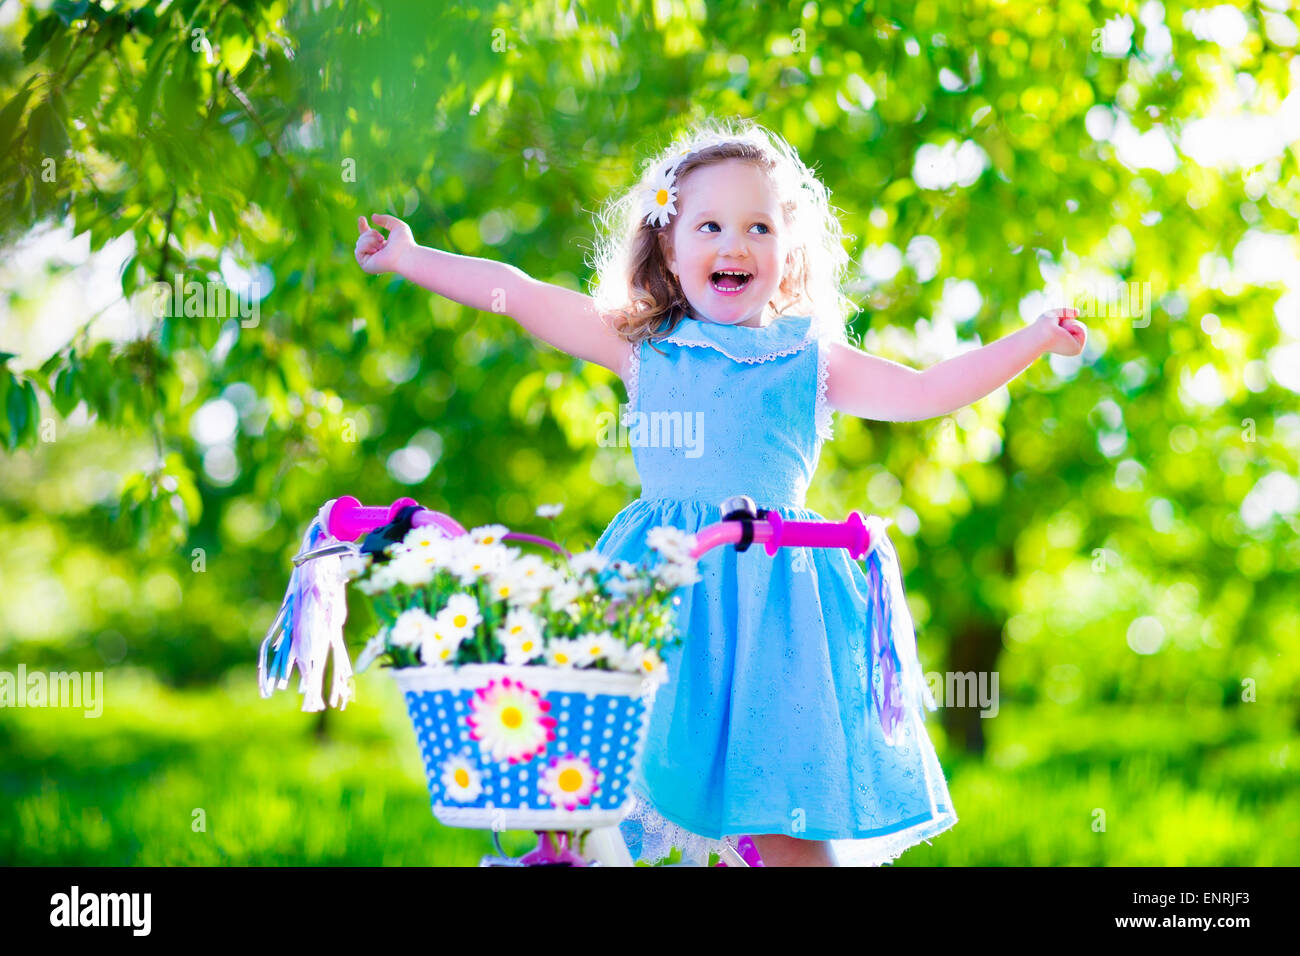 Glückliches Kind mit dem Fahrrad. Süßes Kind Radfahren im Freien. Kleines Mädchen in einem blauen Kleid auf einem rosa Fahrrad mit Blumen-Gänseblümchen Stockfoto